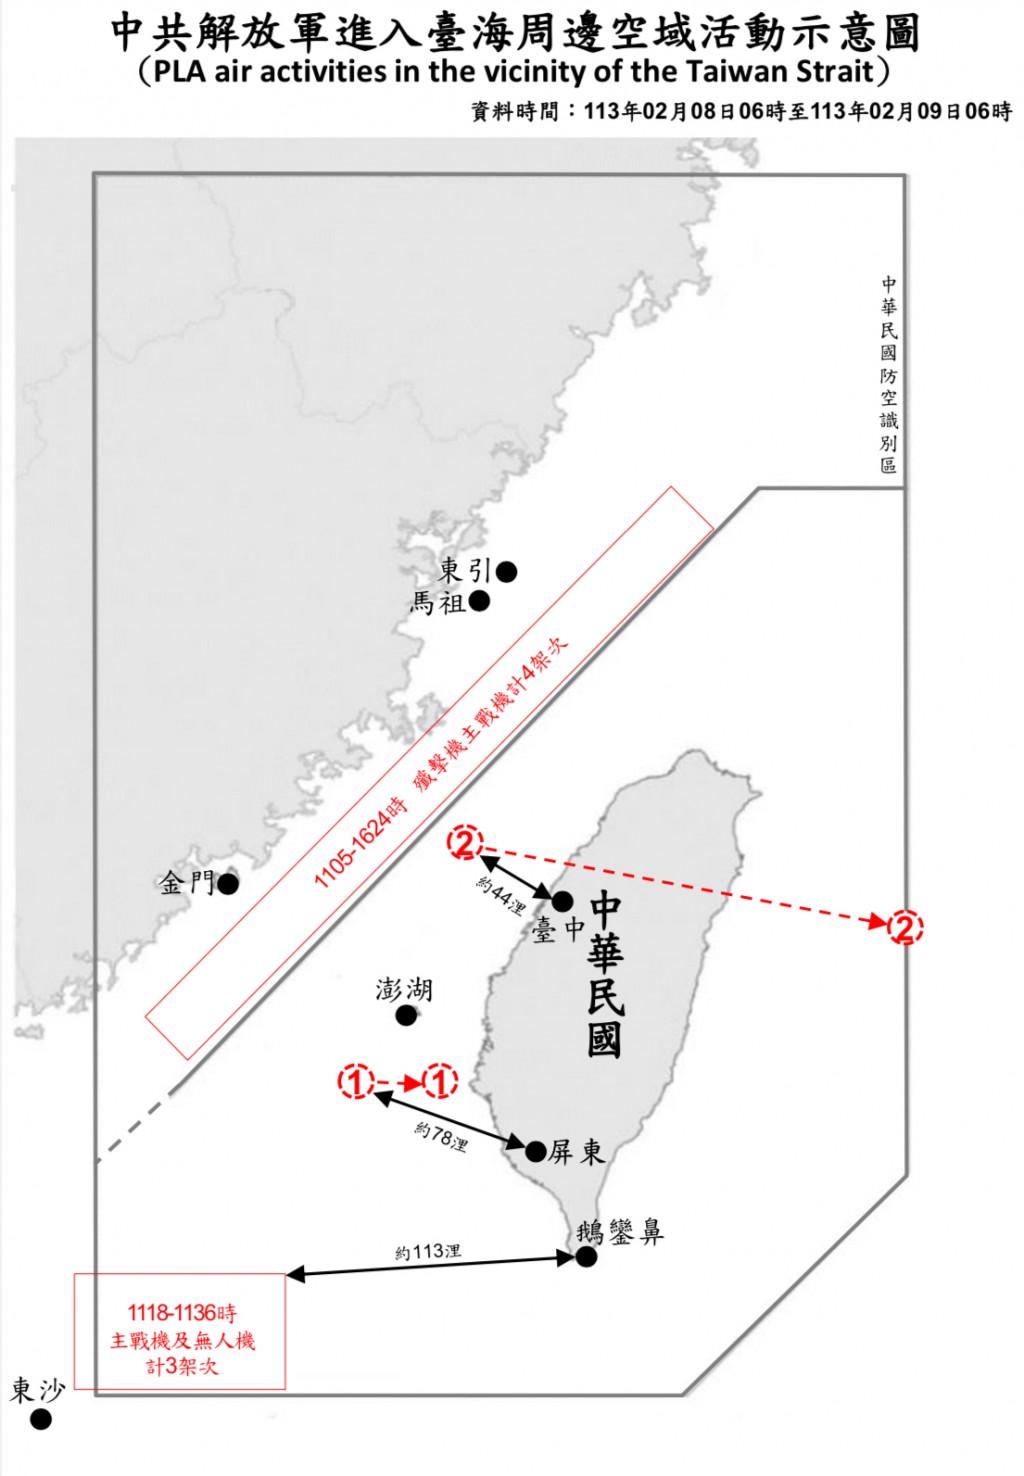 Taiwan tracks 7 Chinese military aircraft, 5 naval ships